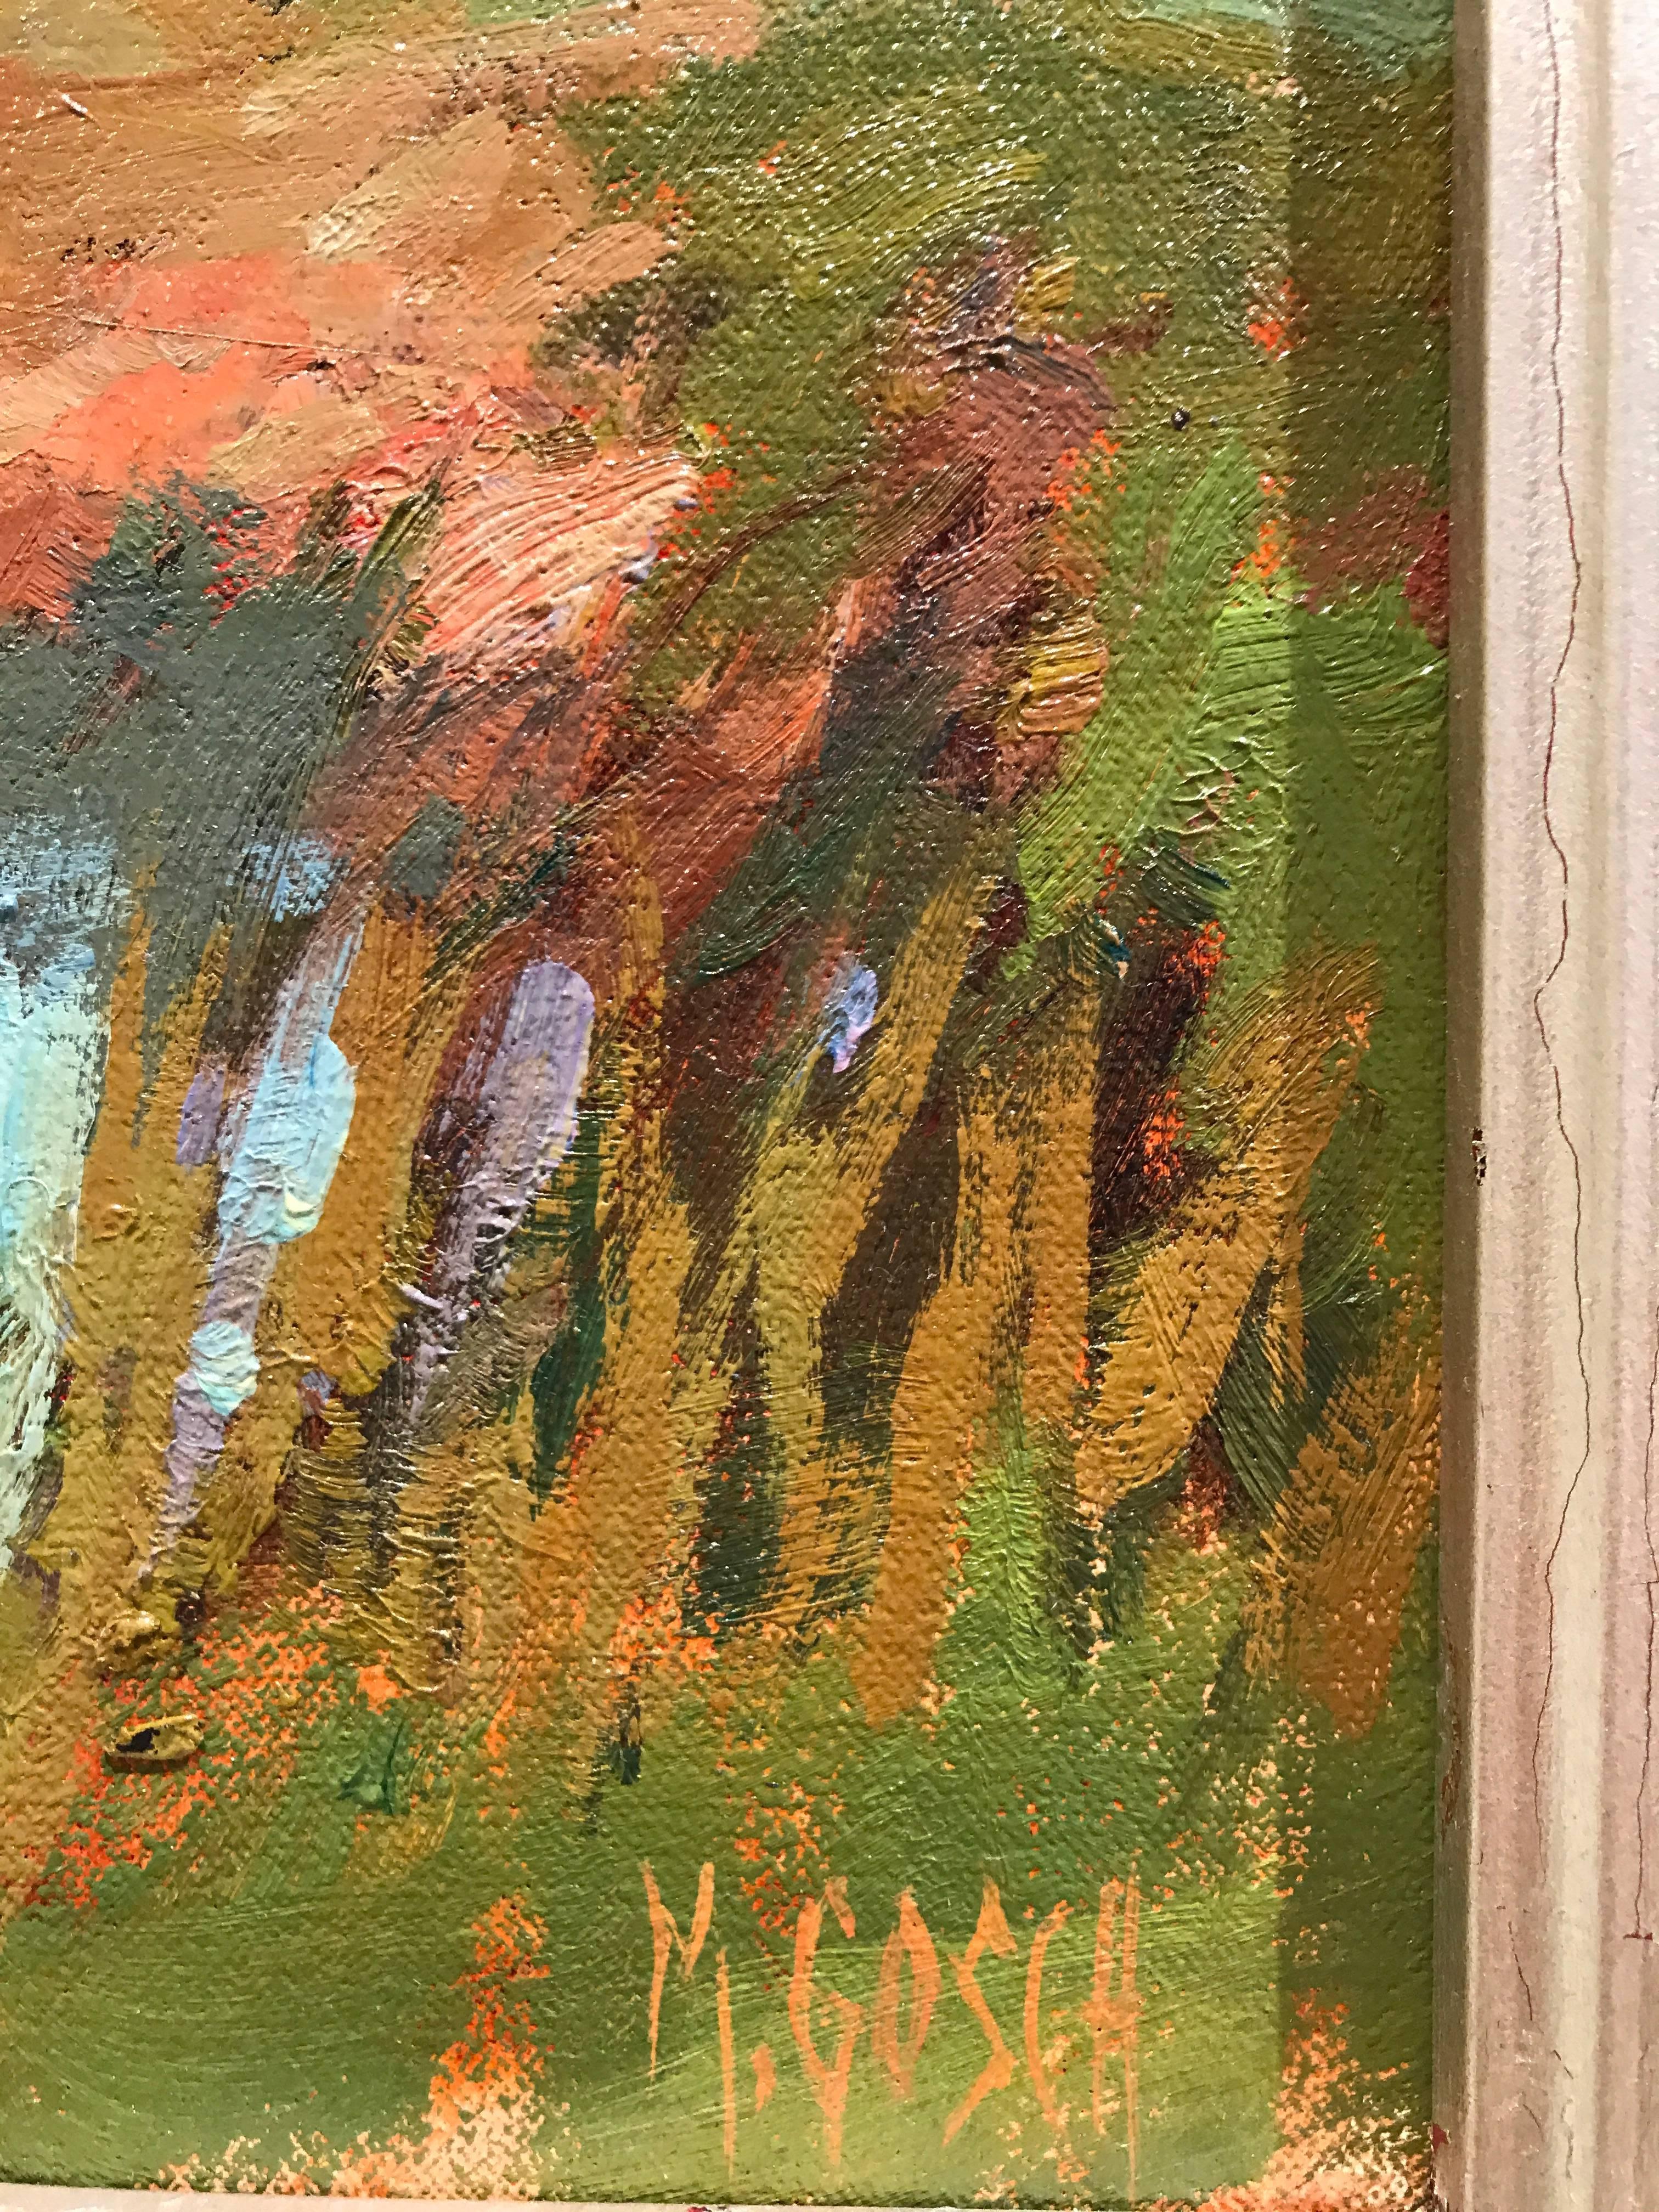 Dieses schöne Stück wurde von der amerikanischen Künstlerin Millie Gosch in Südgeorgien en plein air gemalt. Die Palette ist von grünem:: blauem:: orangefarbenem:: rosa und braunem Ton durchdrungen. Eine schöne Farbpalette und beruhigende